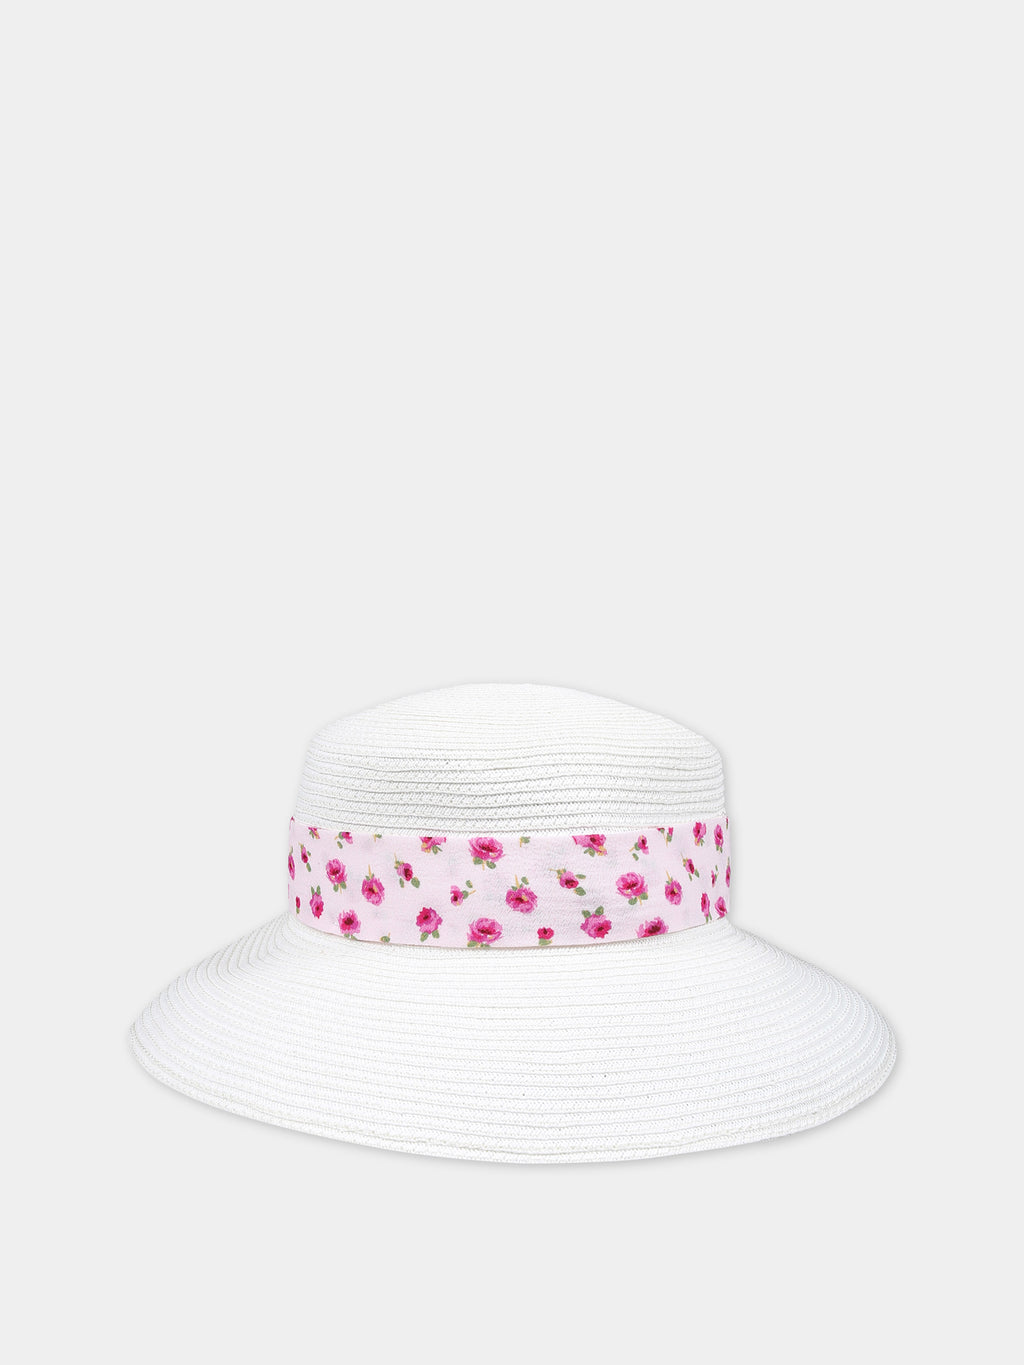 Cappello di paglia bianco per bambina con fiori